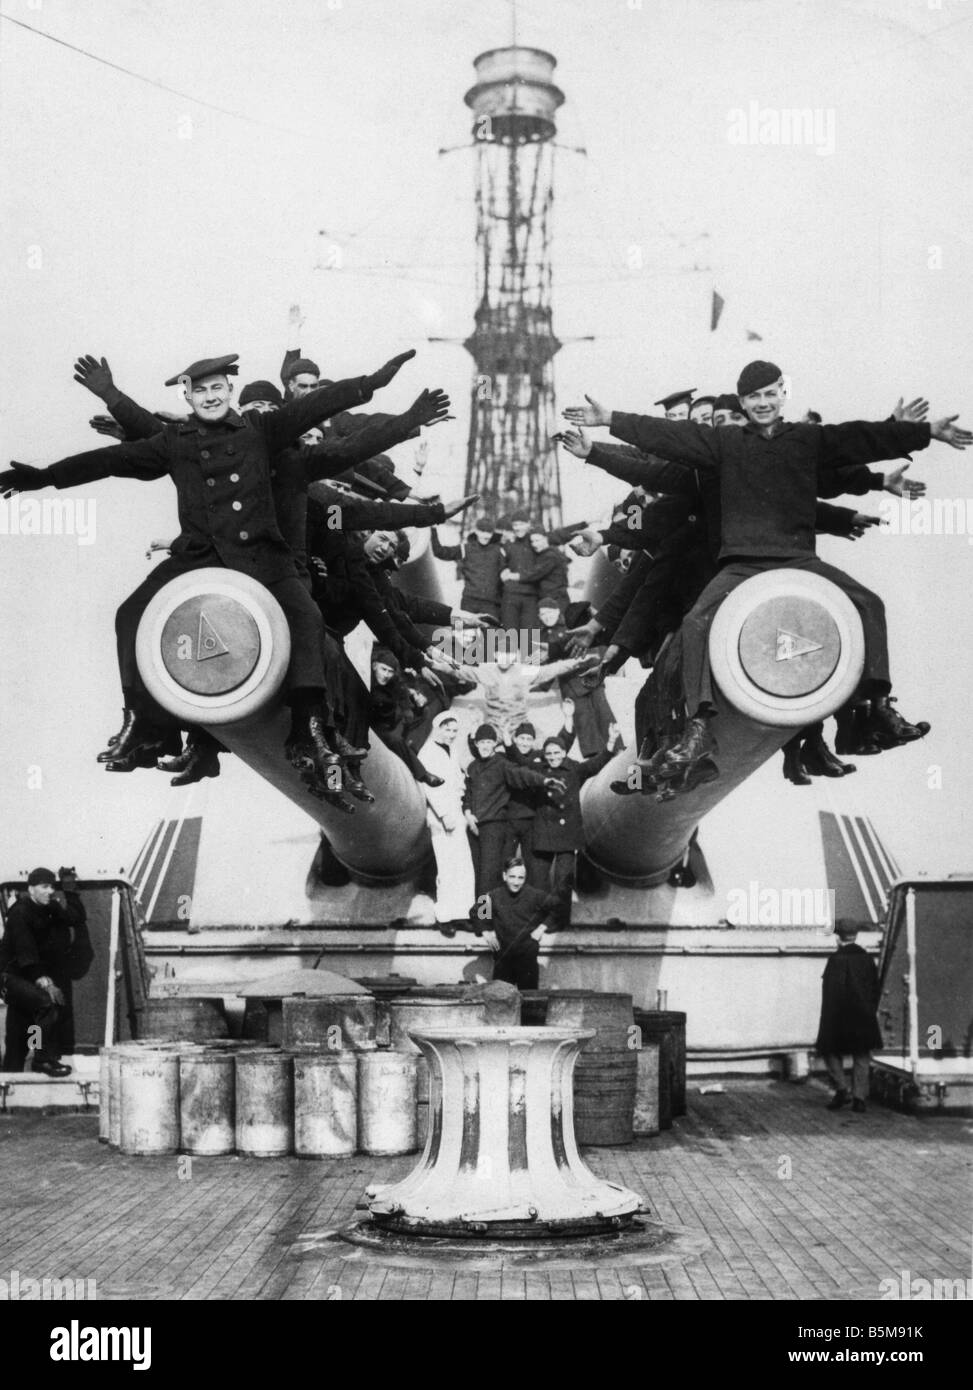 2 G55 M1 1918 4 E US Seeleute auf Kanonen WWI 1918 Geschichte Weltkrieg Krieg auf hoher See die Crew der U S S Texas sitting on Top of gu Stockfoto